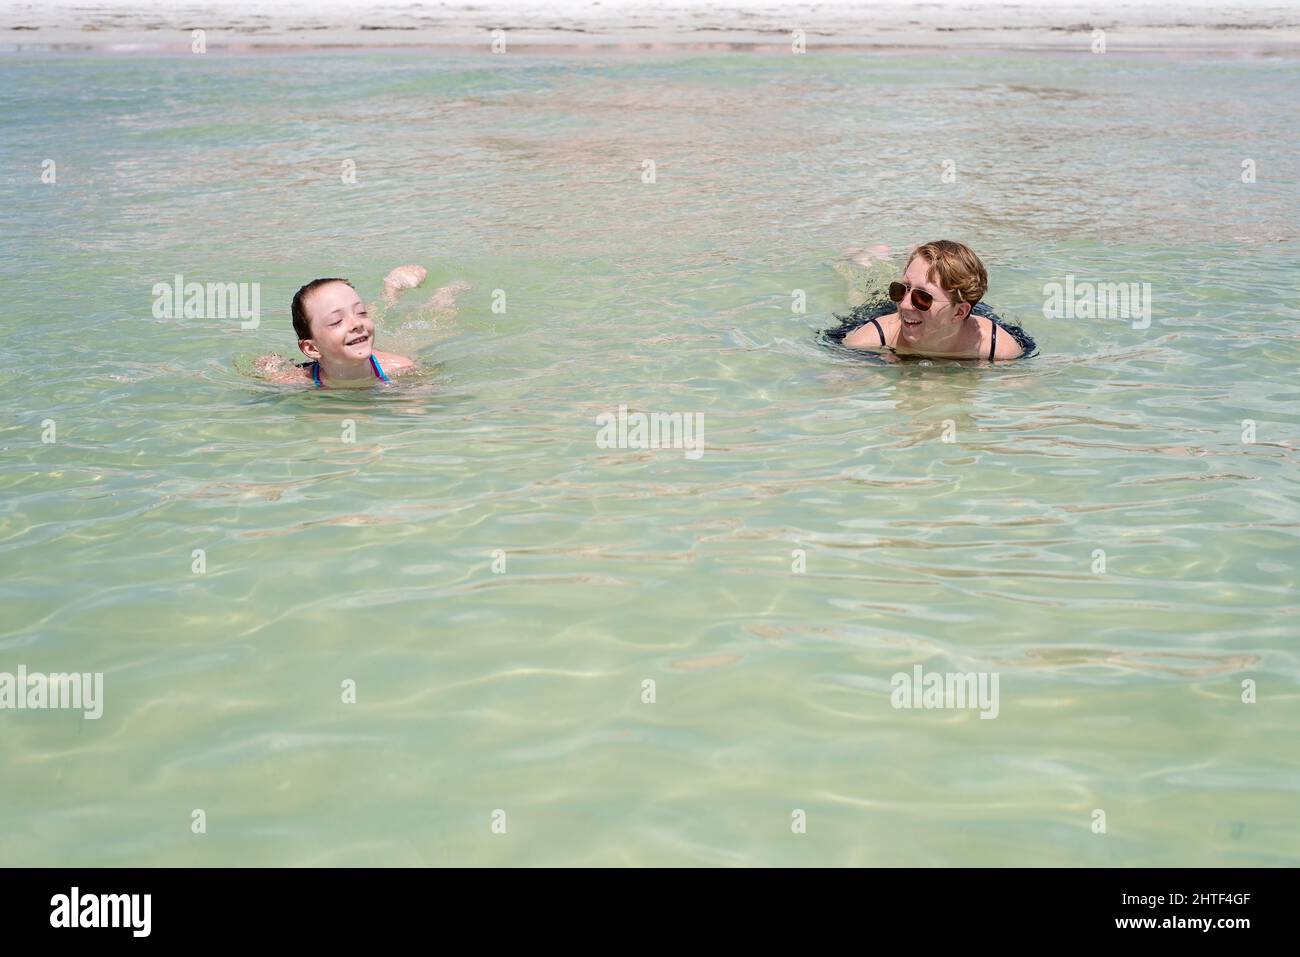 Moment doux entre deux sœurs flottant dans l'eau du golfe Banque D'Images